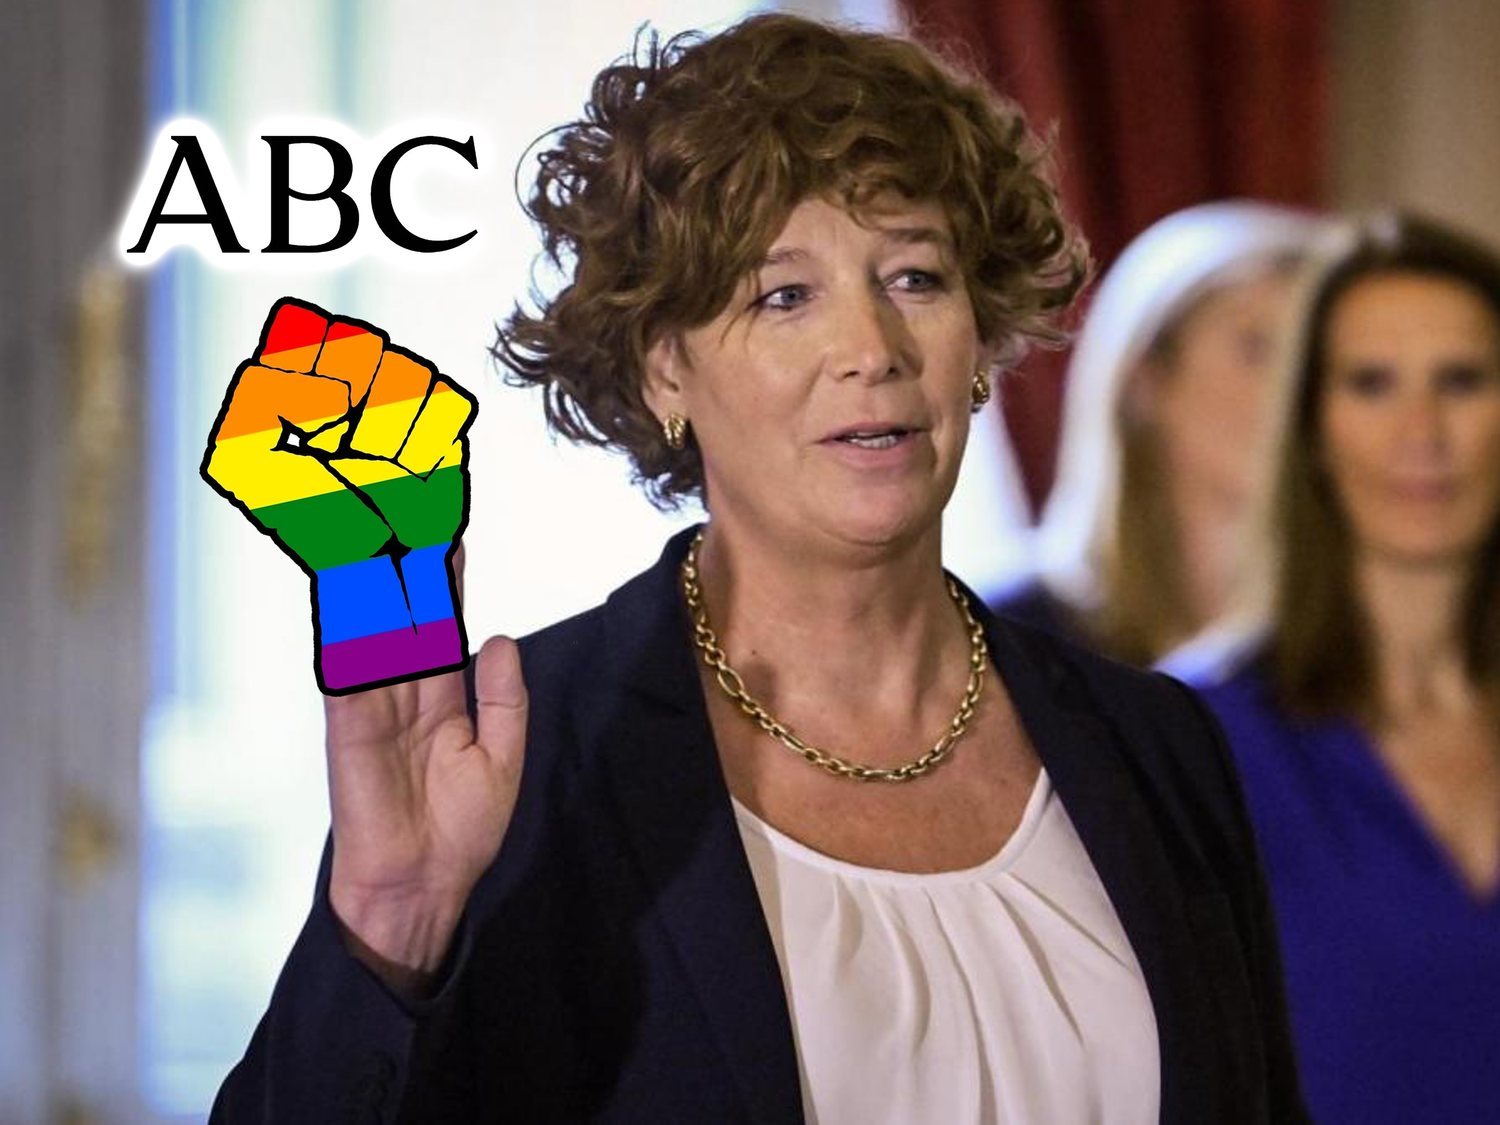 El artículo transfóbico del diario ABC que ha generado críticas en redes sociales